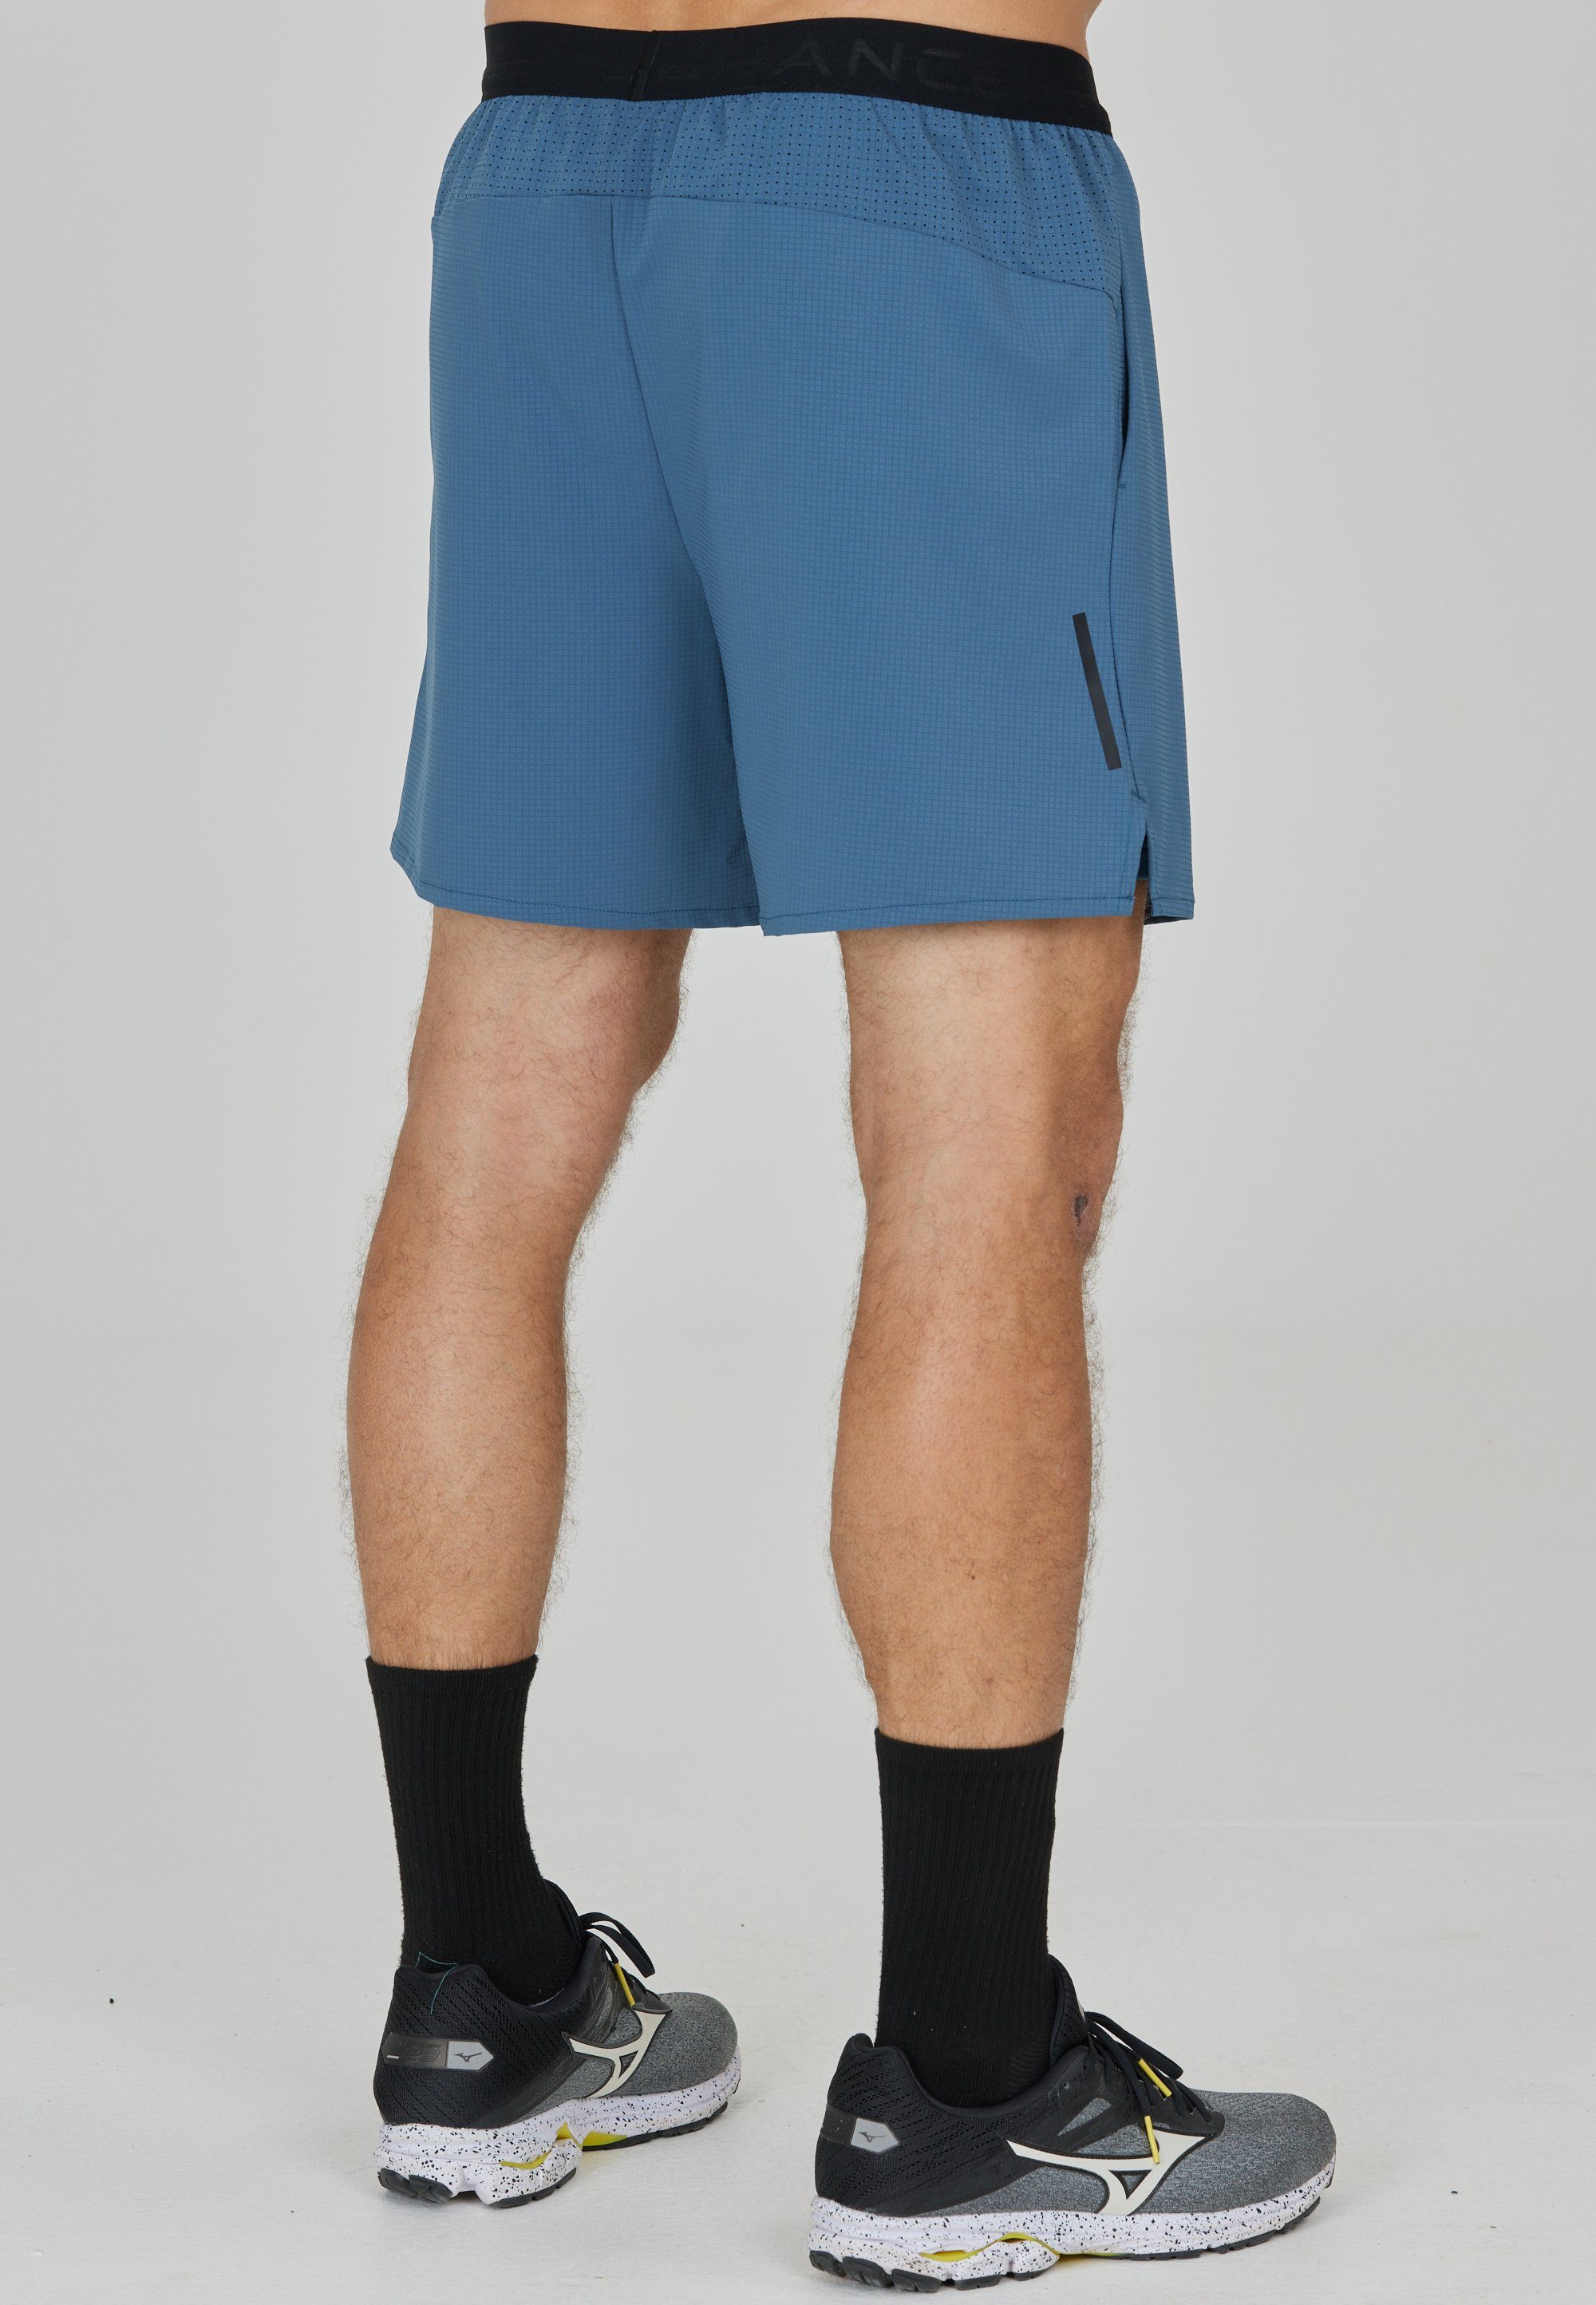 ENDURANCE Shorts Air mit Tights integrierter blau